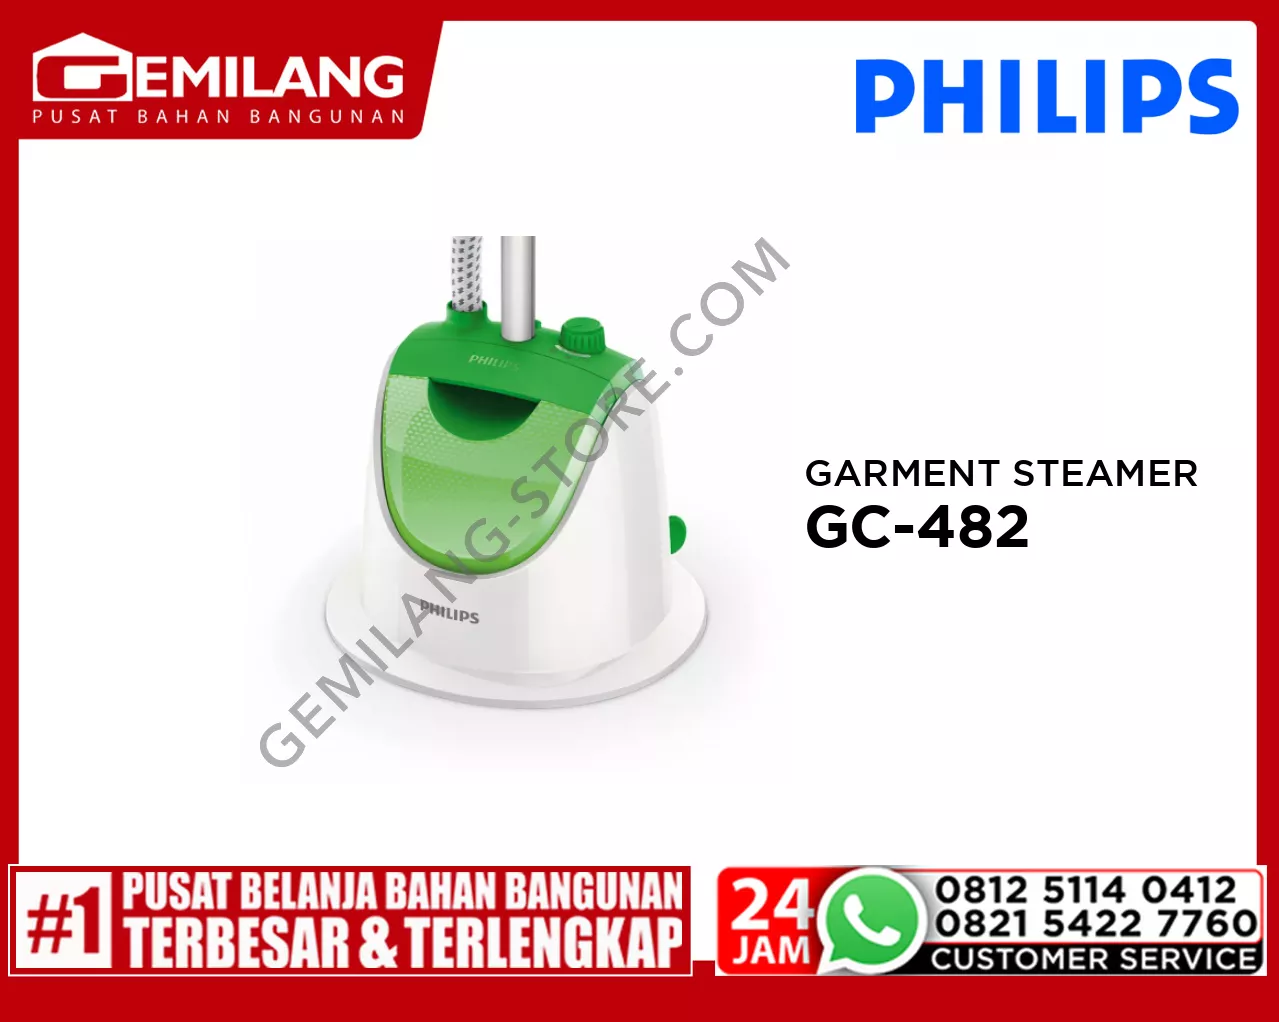 PHILIPS GARMENT STEAMER GC-482